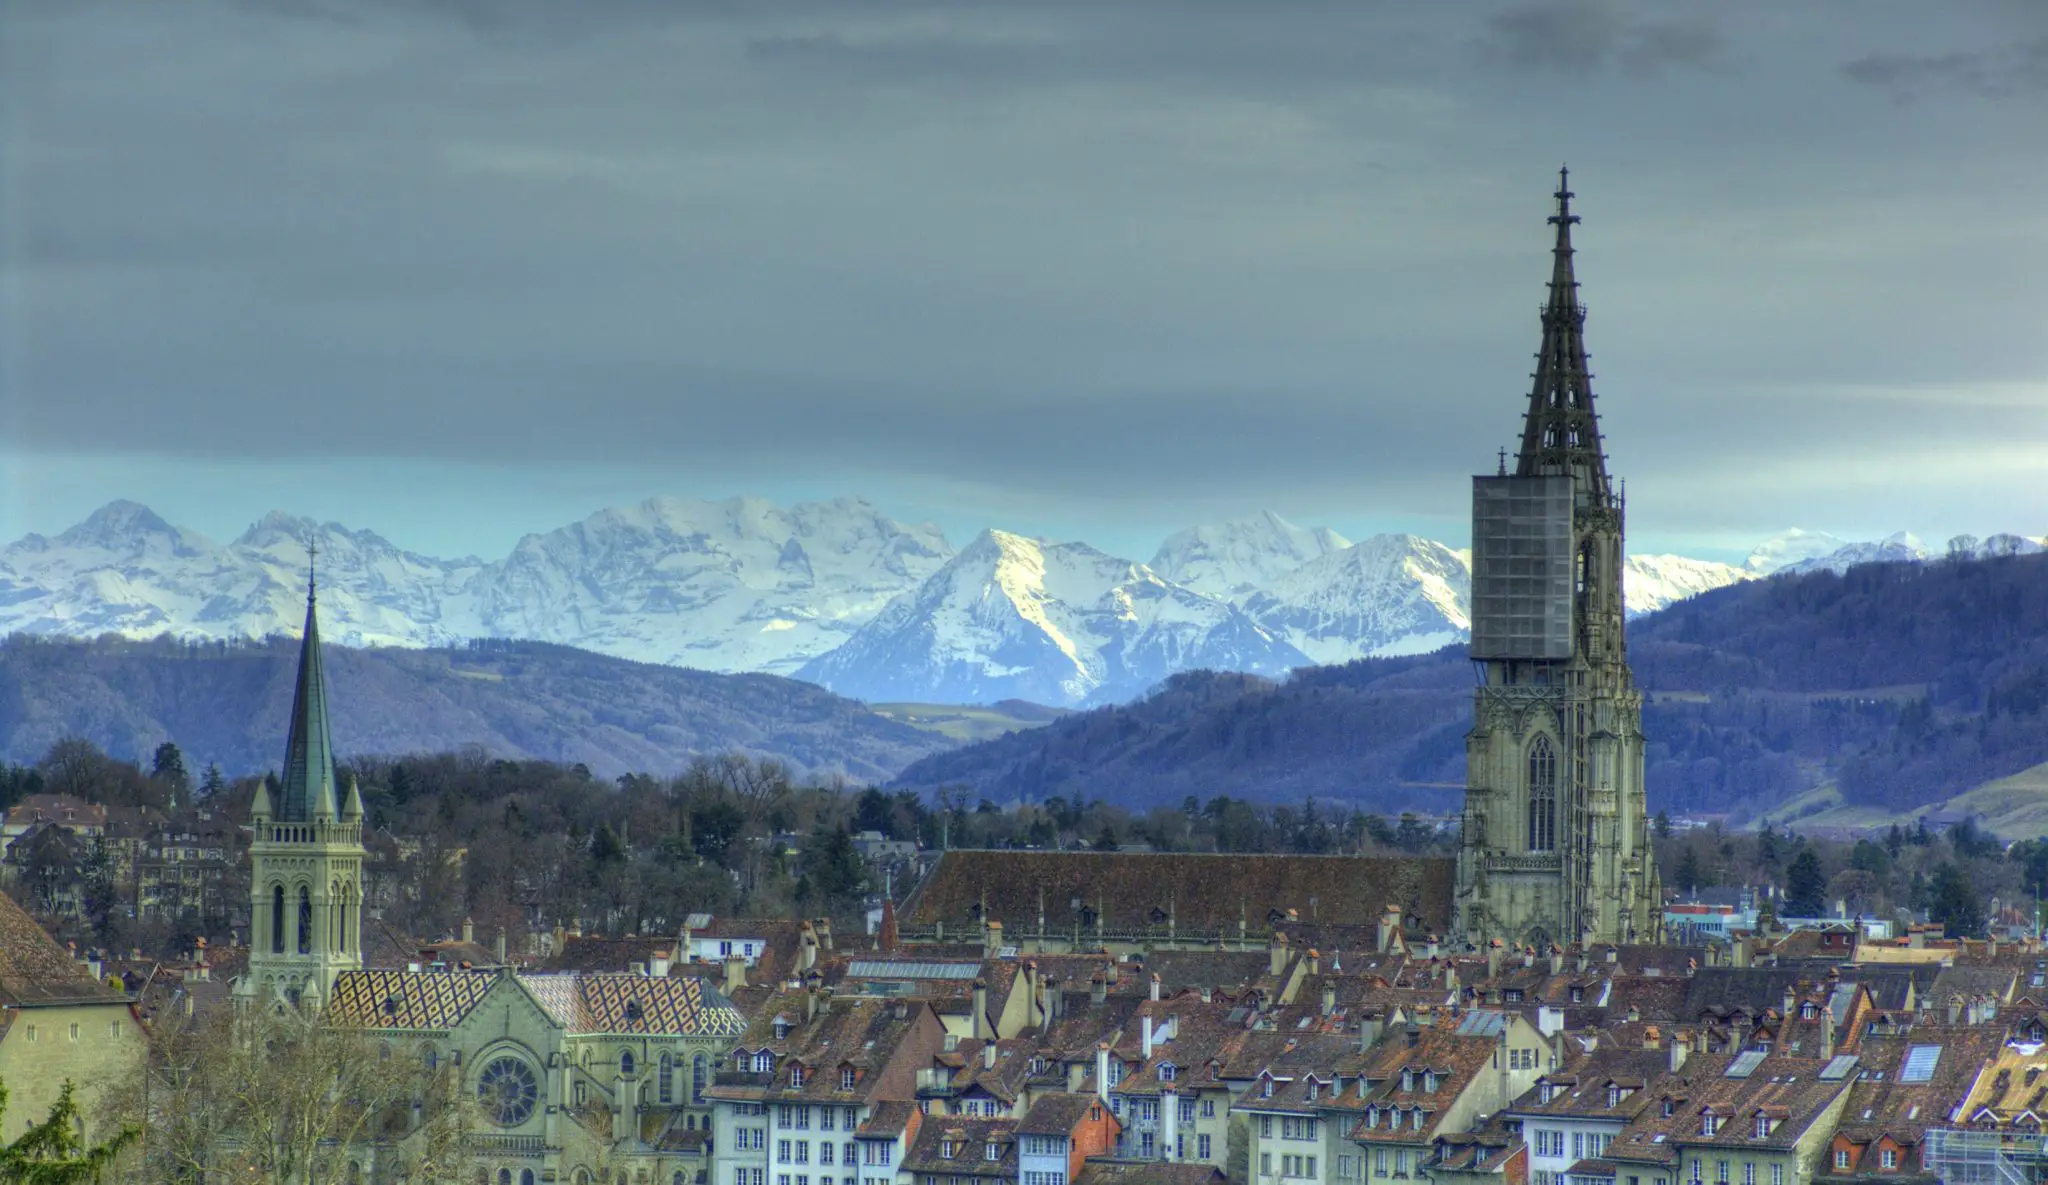 Bern: Switzerland’s capital in a nutshell